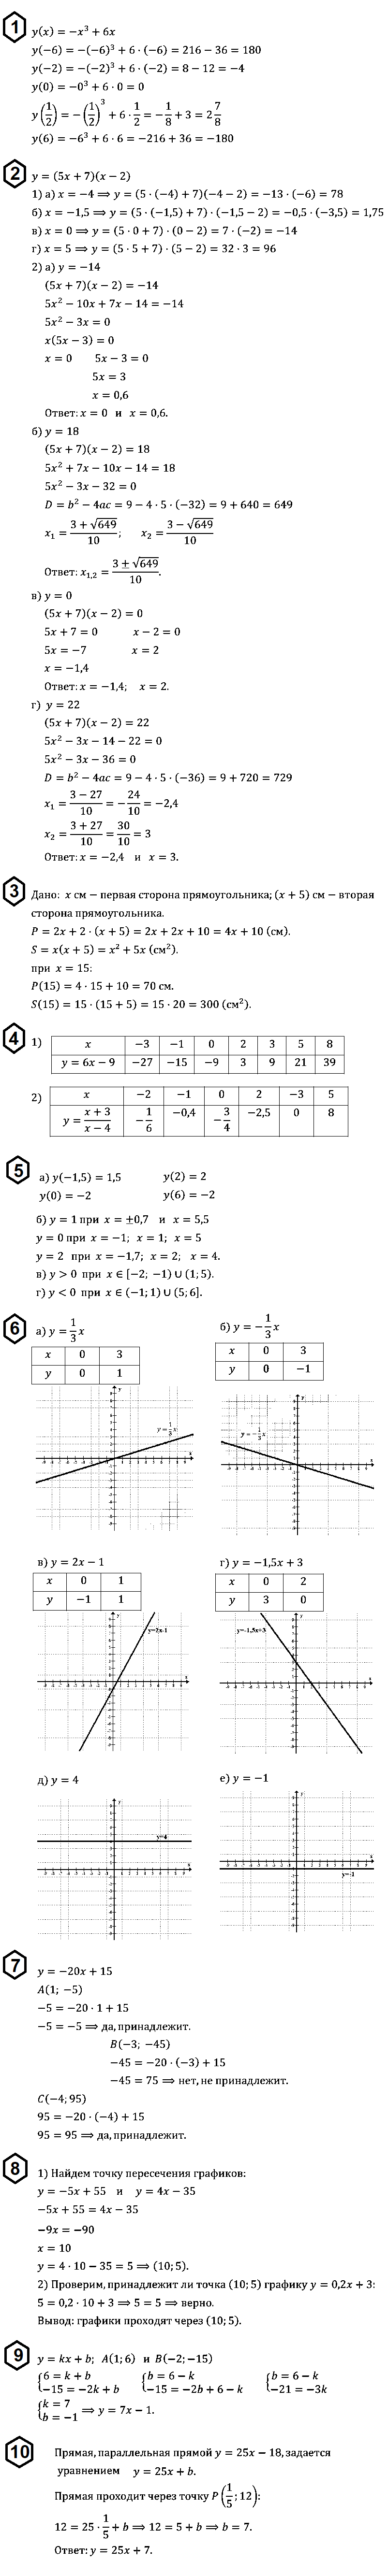 Алгебра 8: С-52. Понятие функции